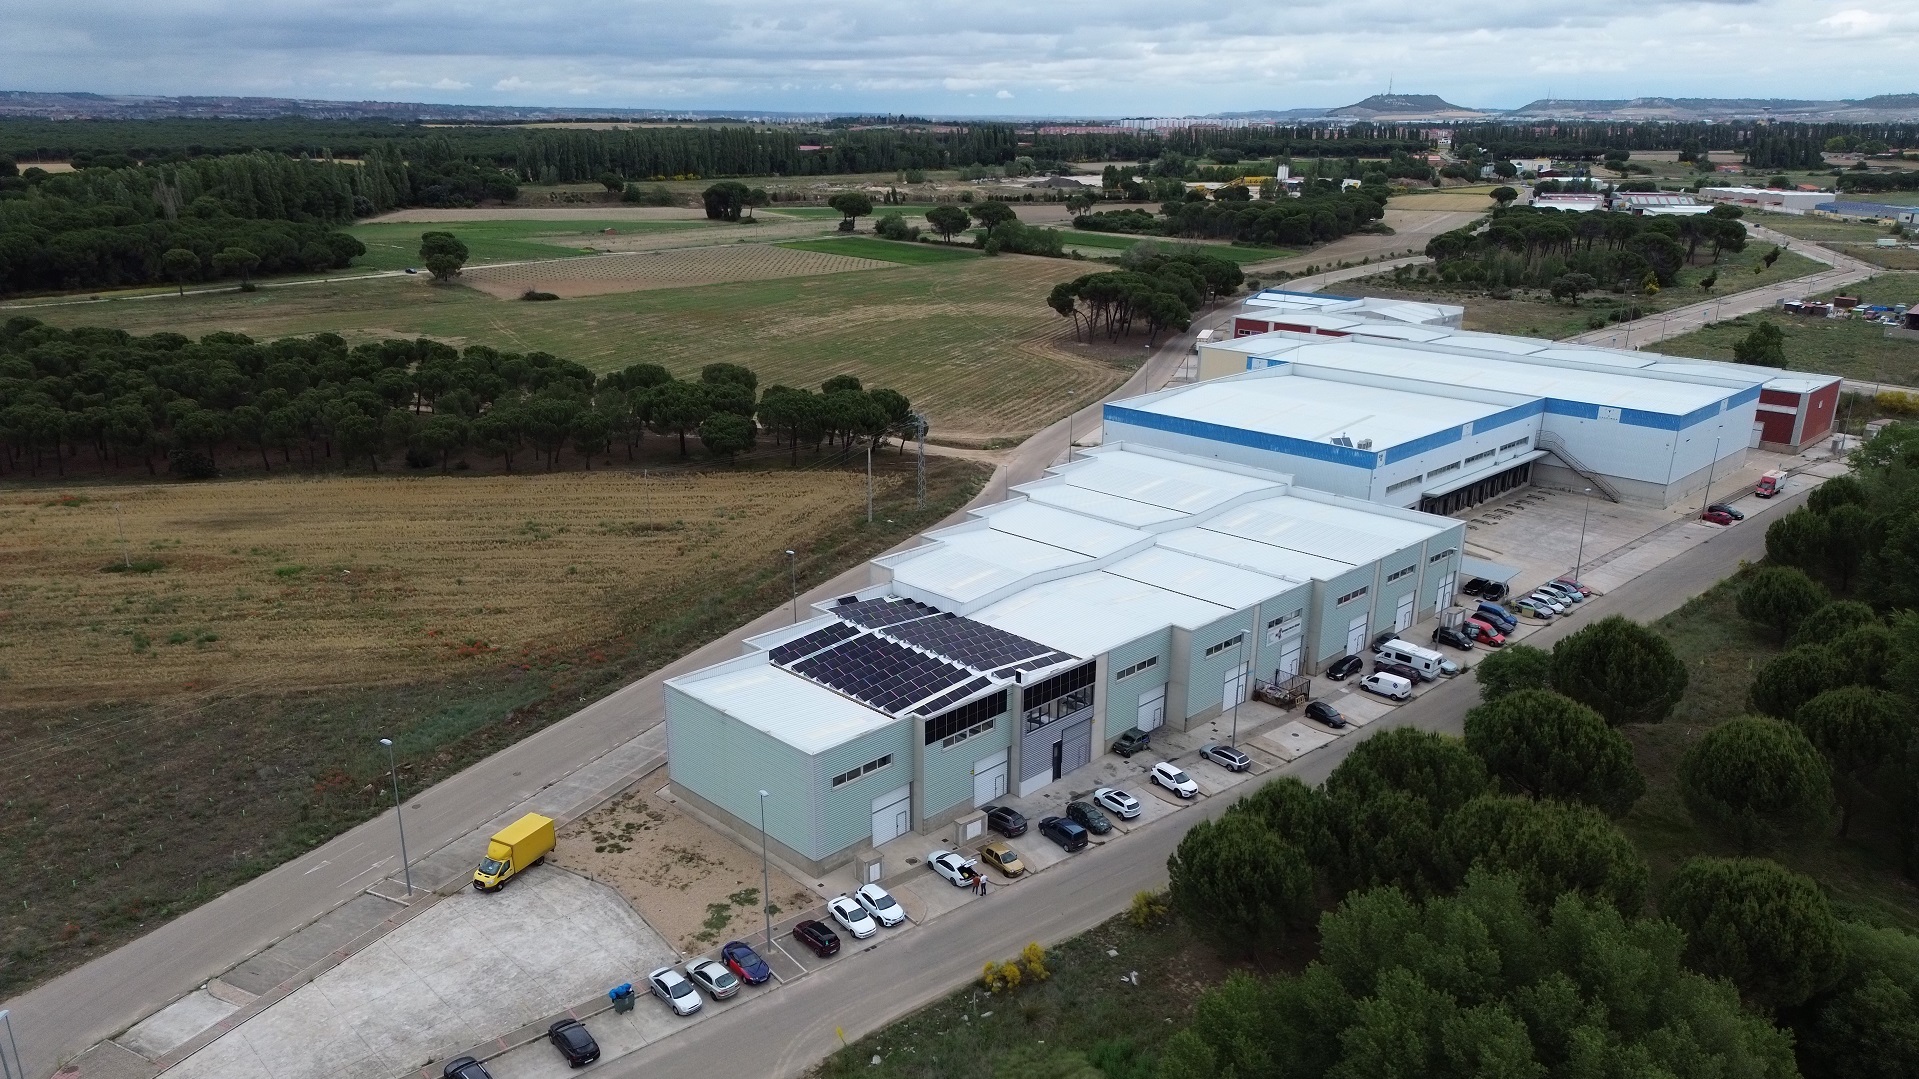 Instalación solar fotovoltaica de autoconsumo de 100,8kWp en Laguna de Duero (Valladolid)